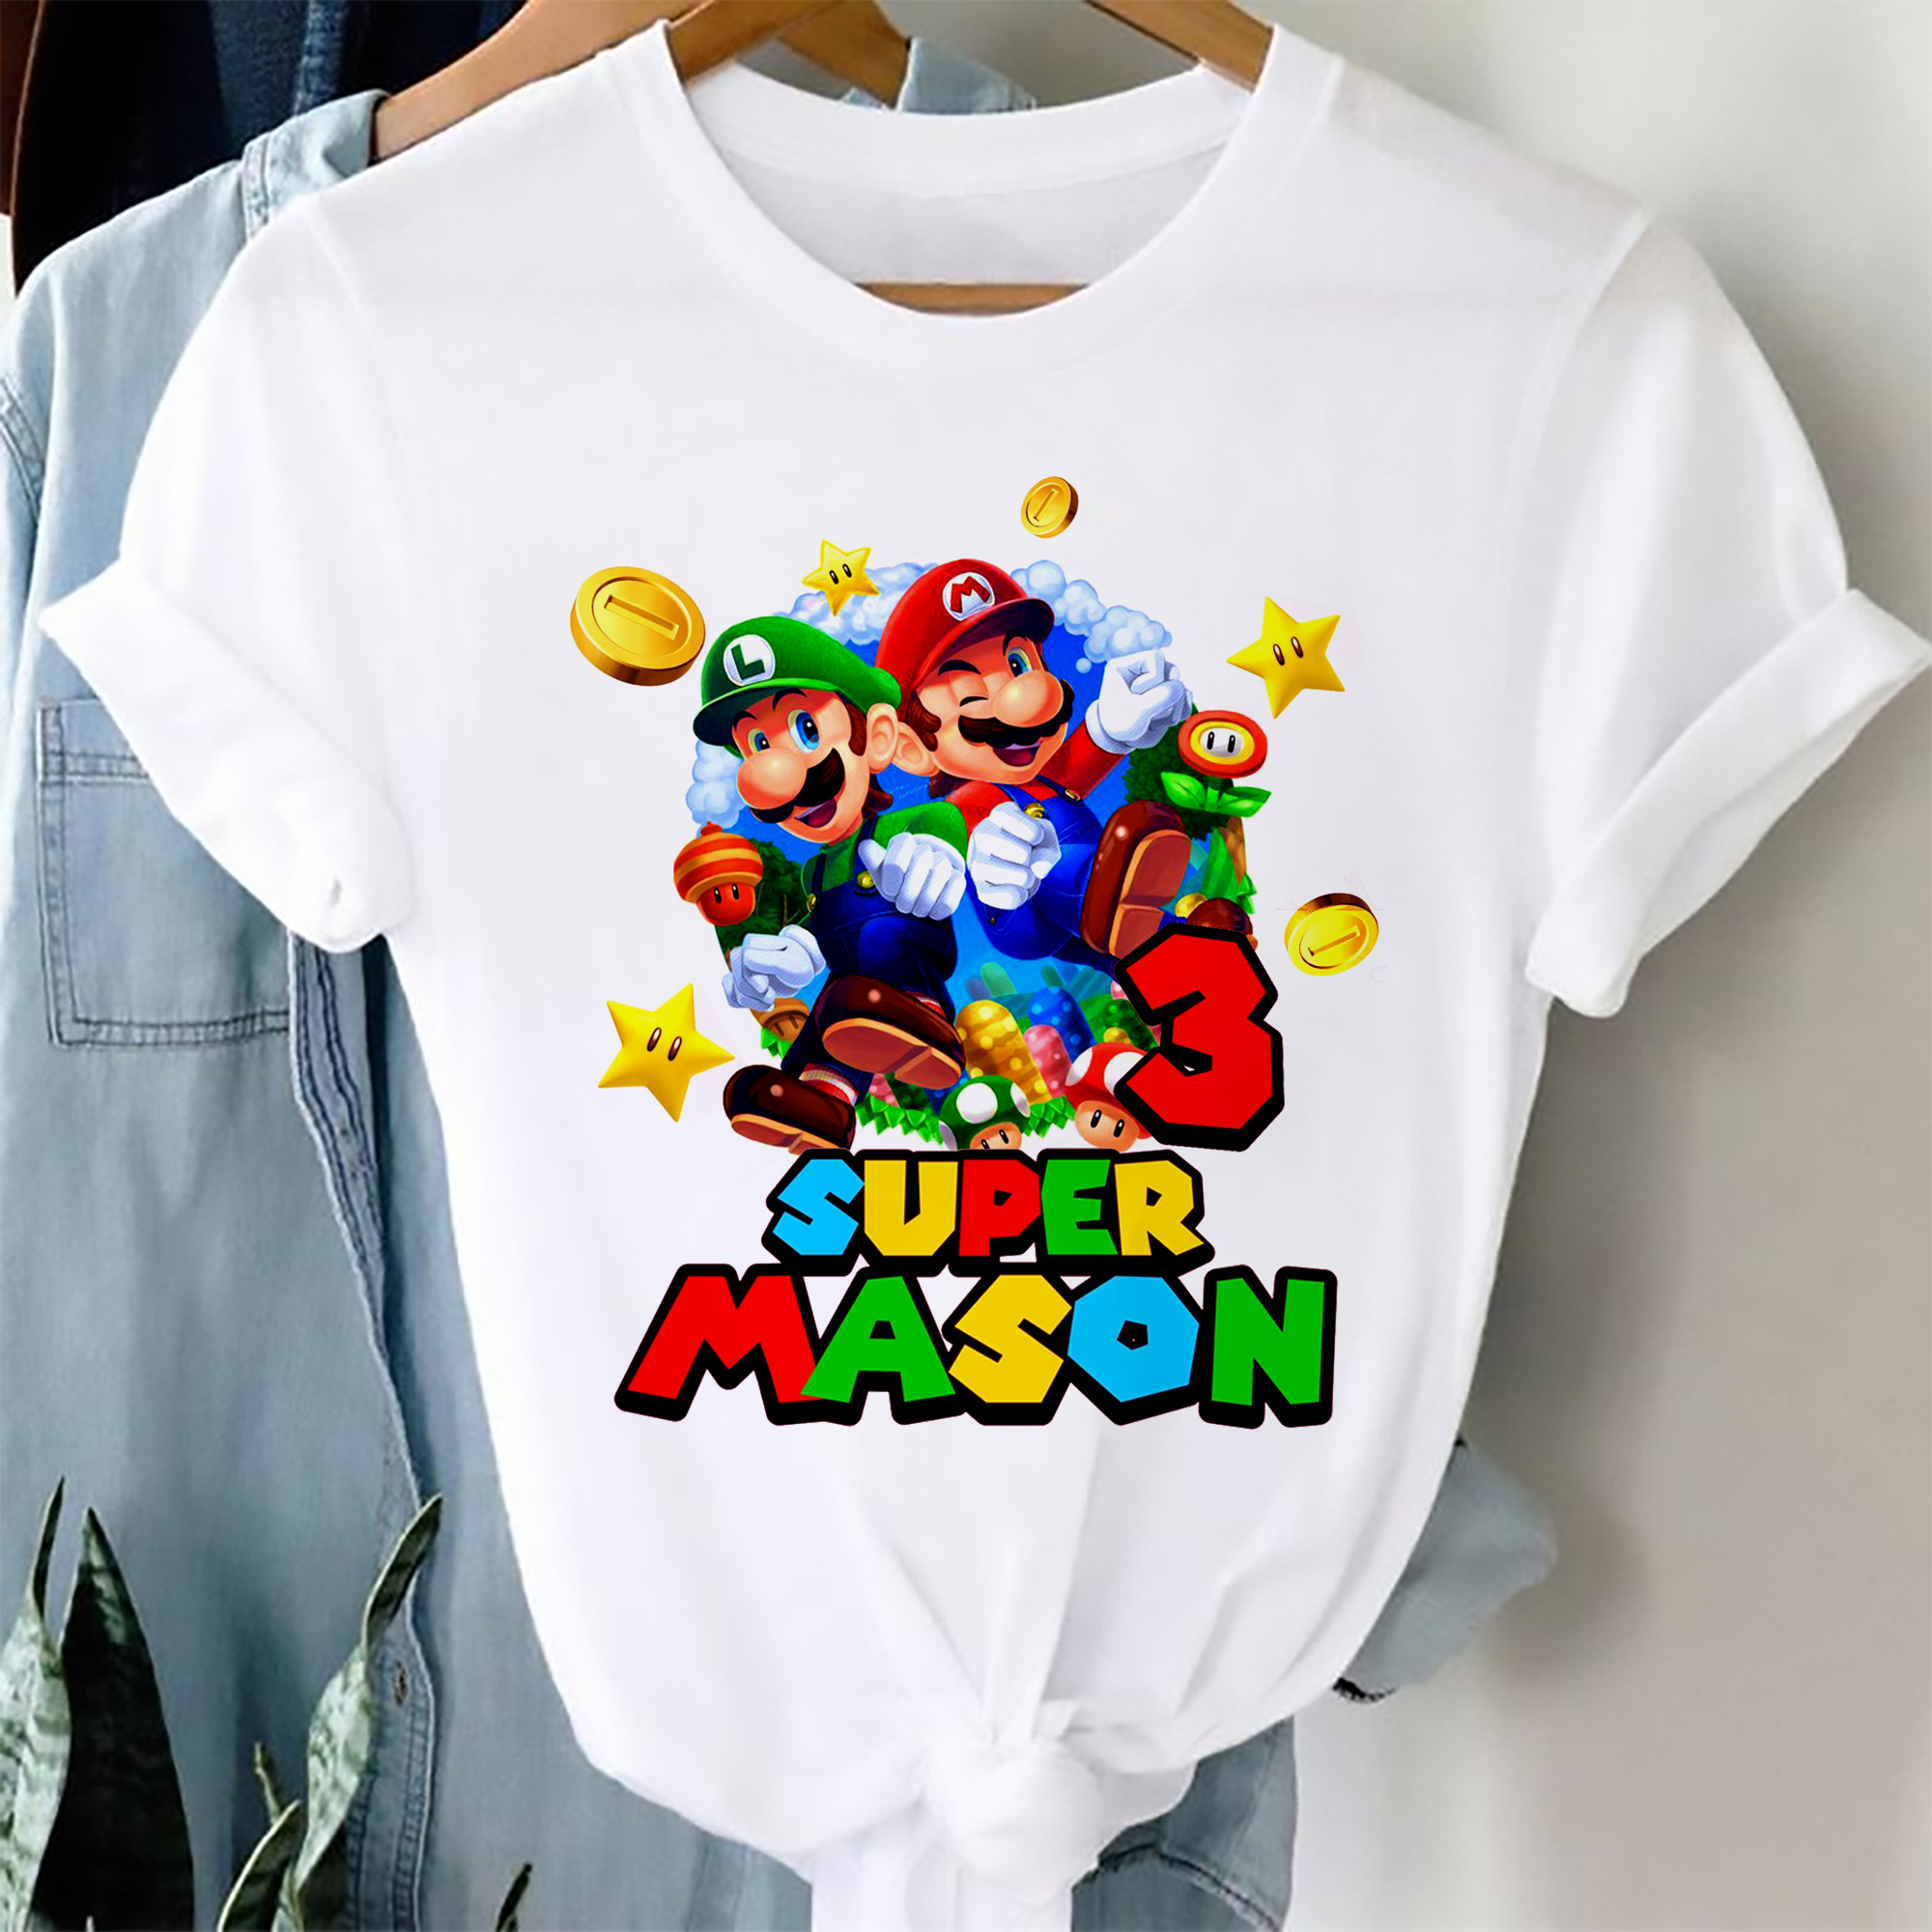 Personalized Super Mario Family Birthday Shirt, Kids Birthday Shirt ...